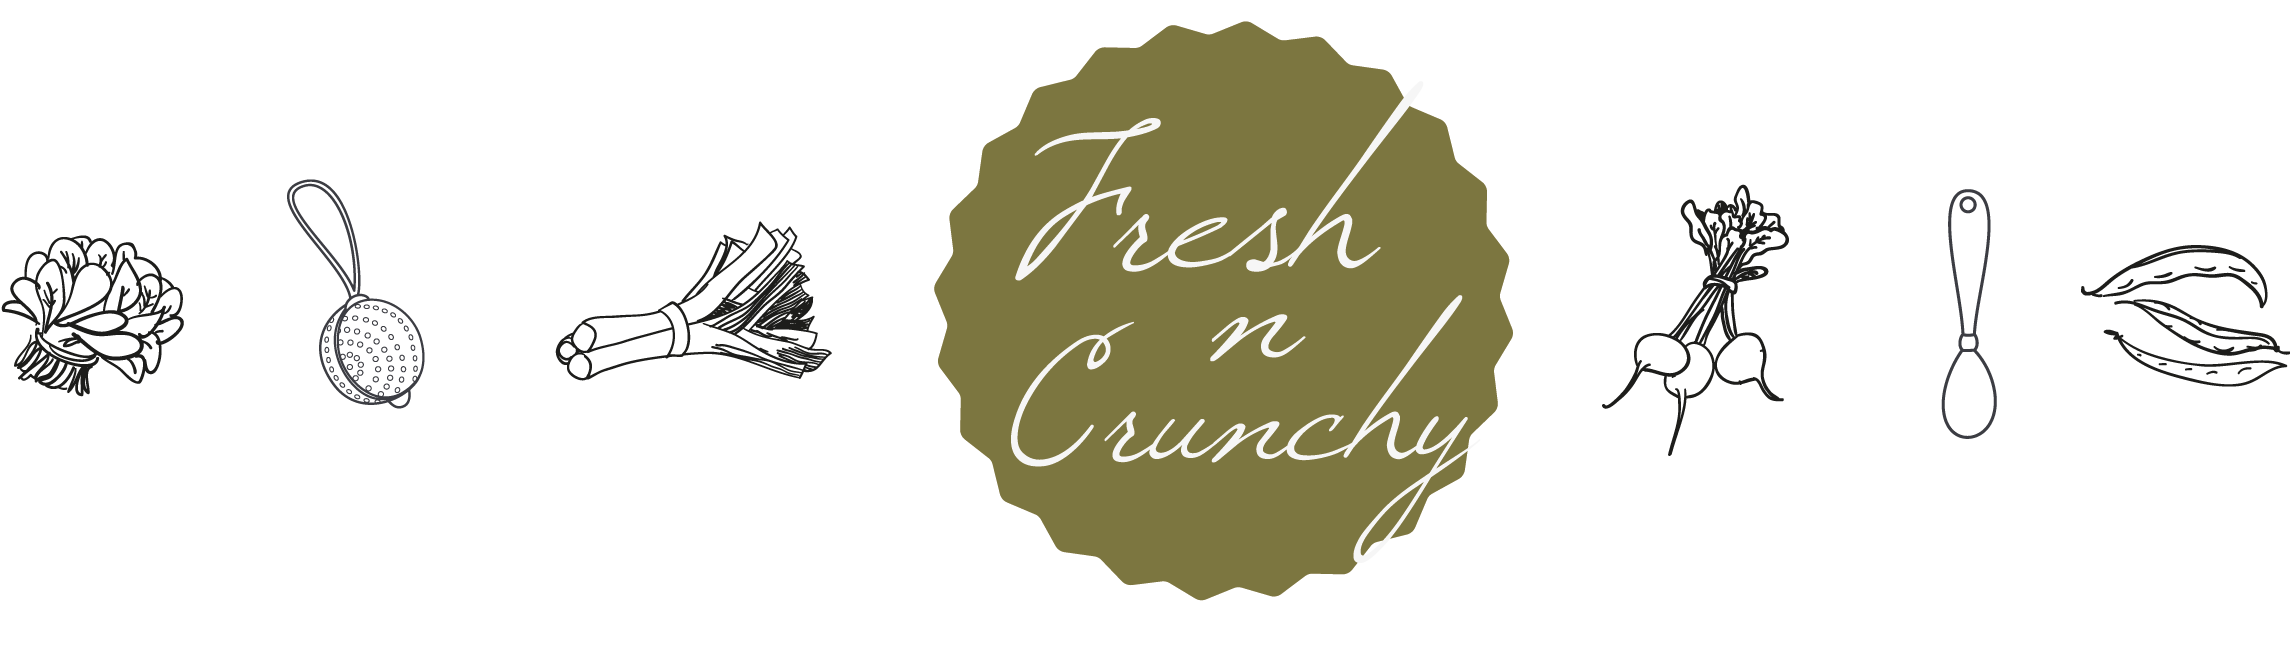 FreshnCrunchy